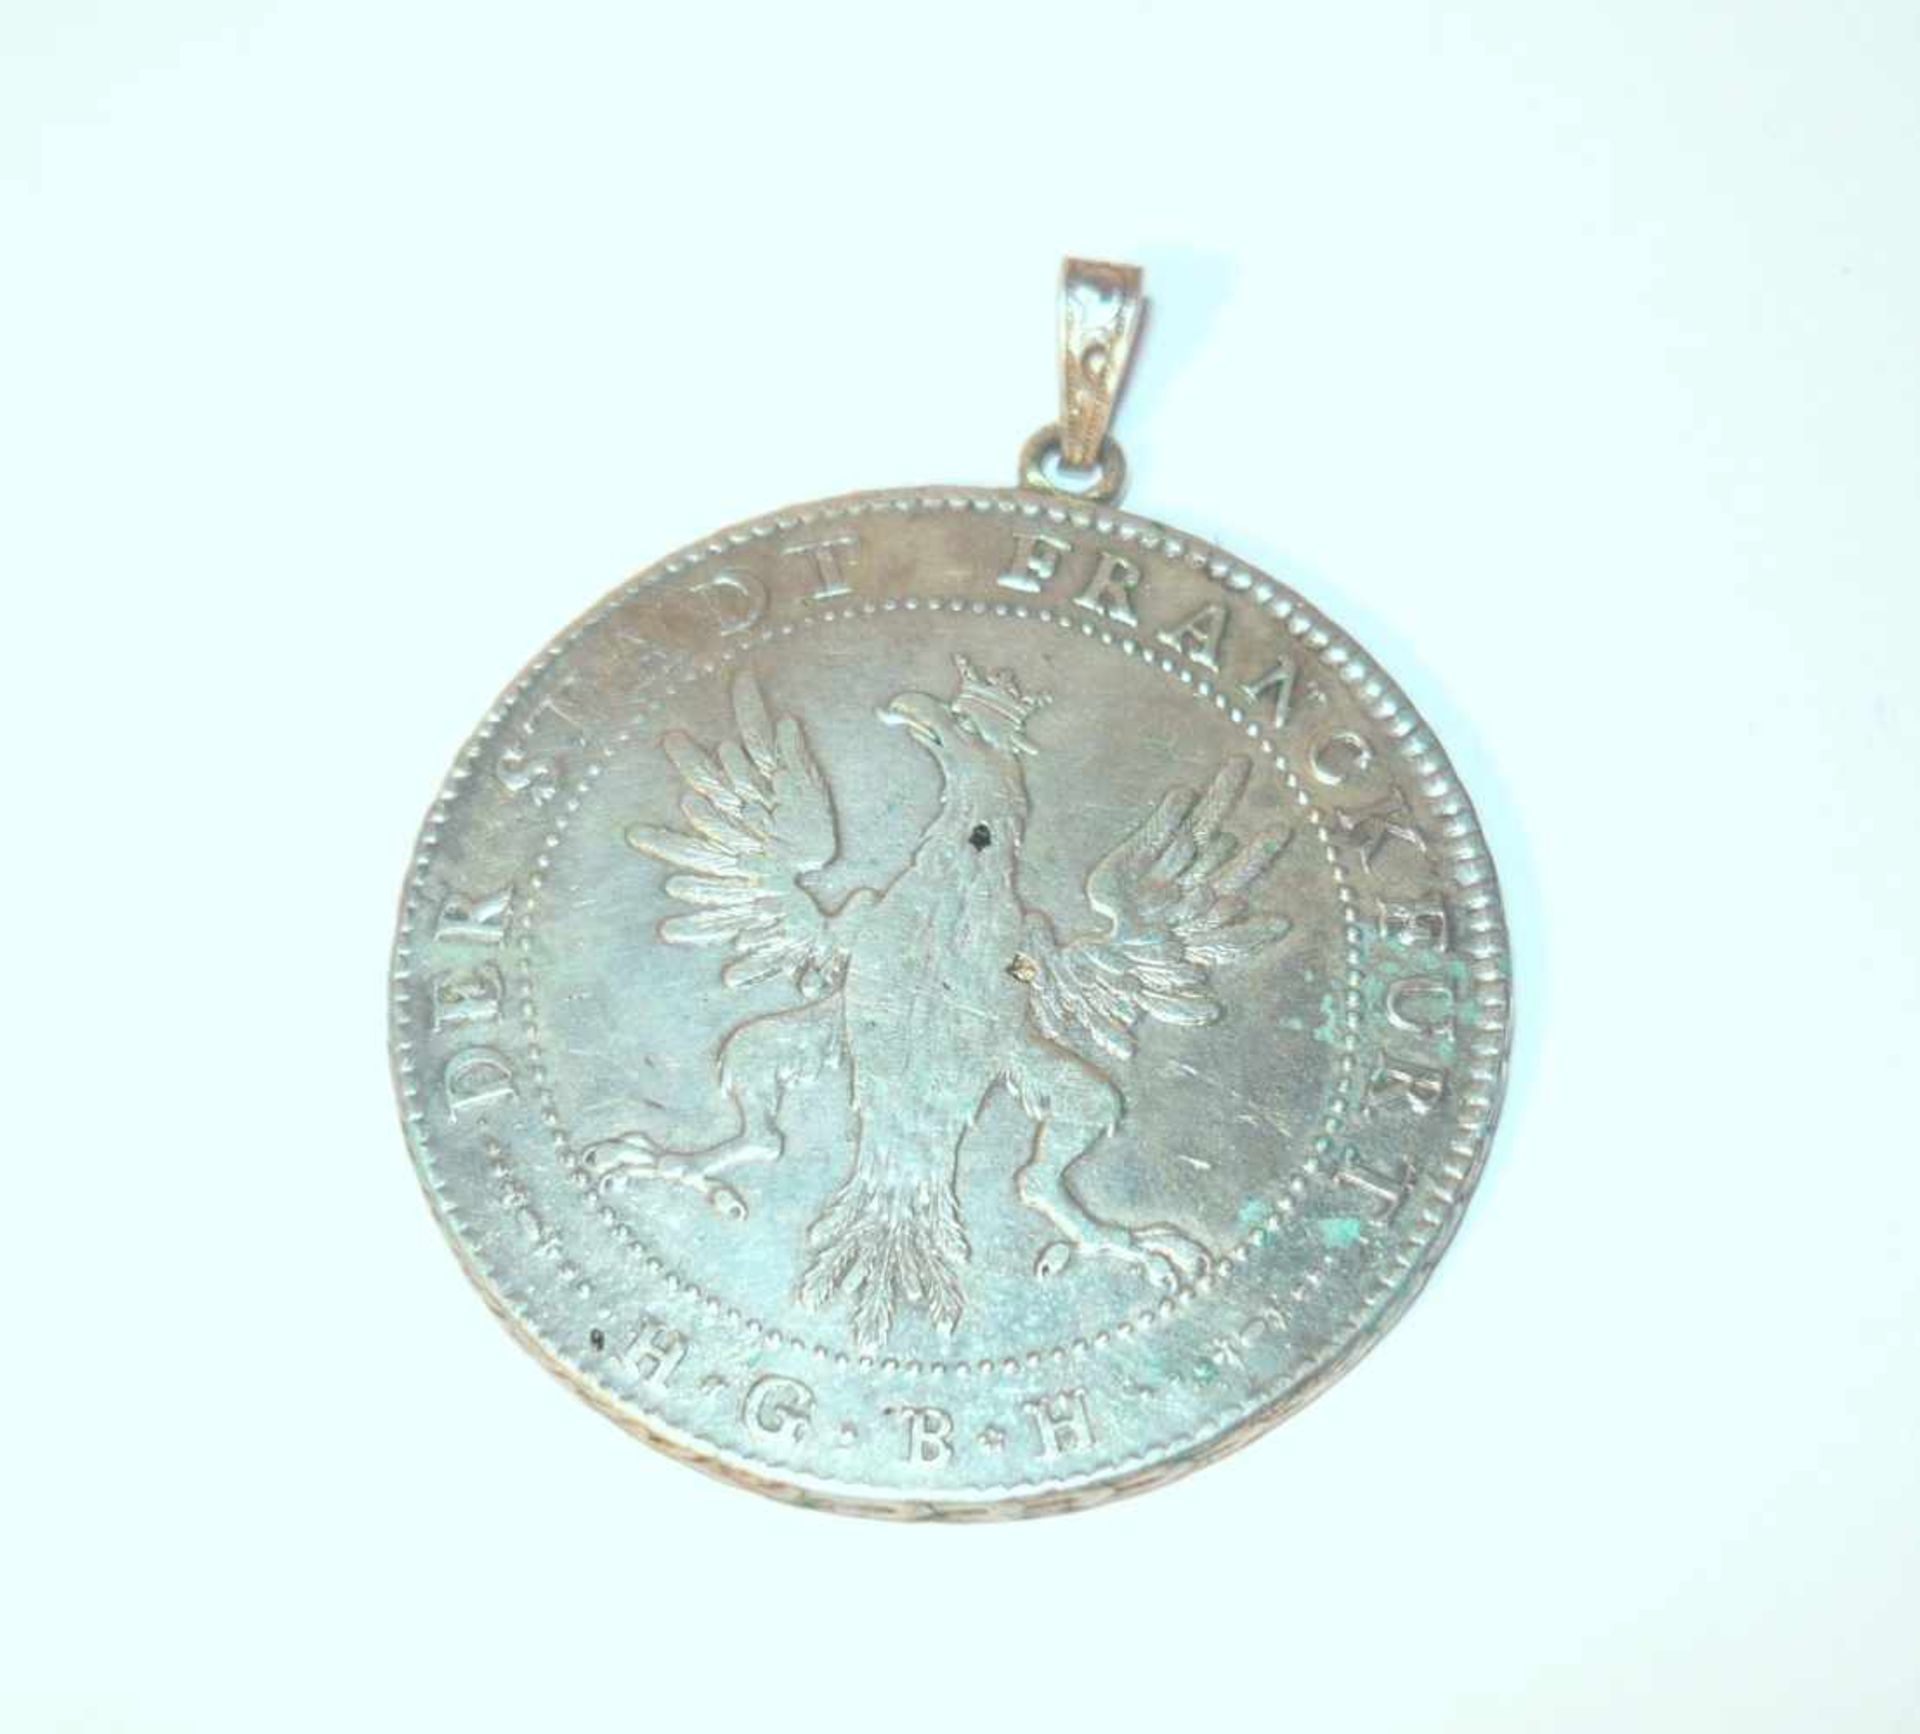 Konventionstaler von 1796. Silber. DM ca. 4 cm.Convention thaler from 1796. Silver. Diam. app. 4 - Bild 3 aus 3